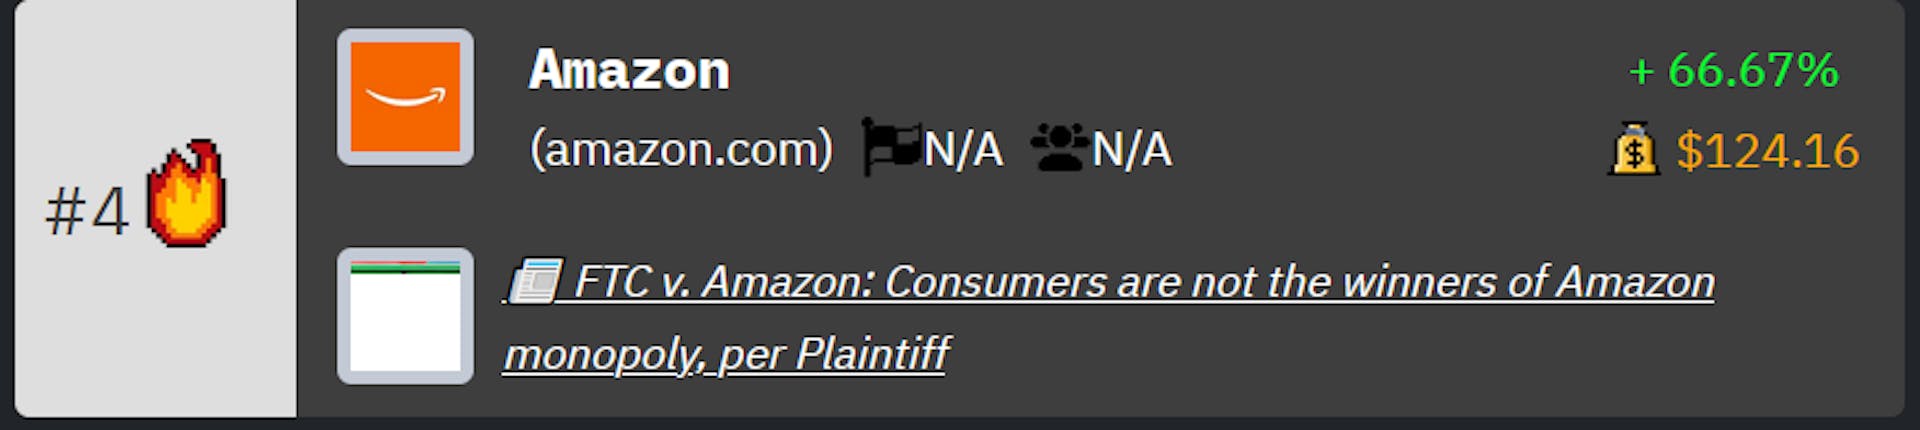 Clasificación de Amazon en las clasificaciones de empresas tecnológicas de HackerNoon